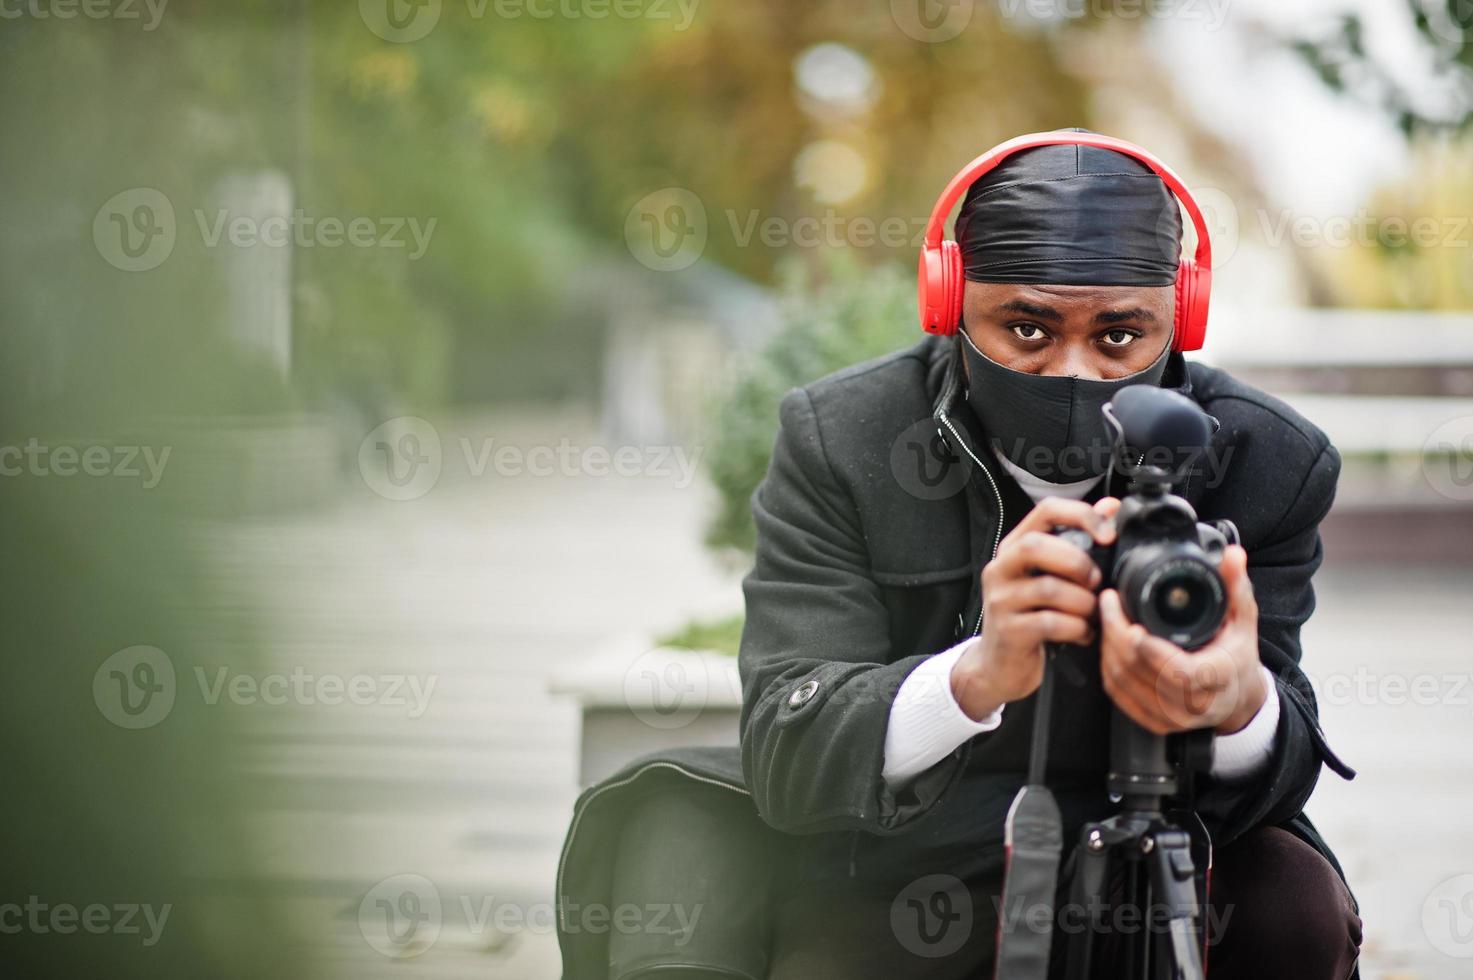 jovem cinegrafista americano africano profissional segurando câmera profissional com equipamento profissional. cinegrafista afro vestindo duraq preto e máscara de proteção facial, fazendo vídeos. foto